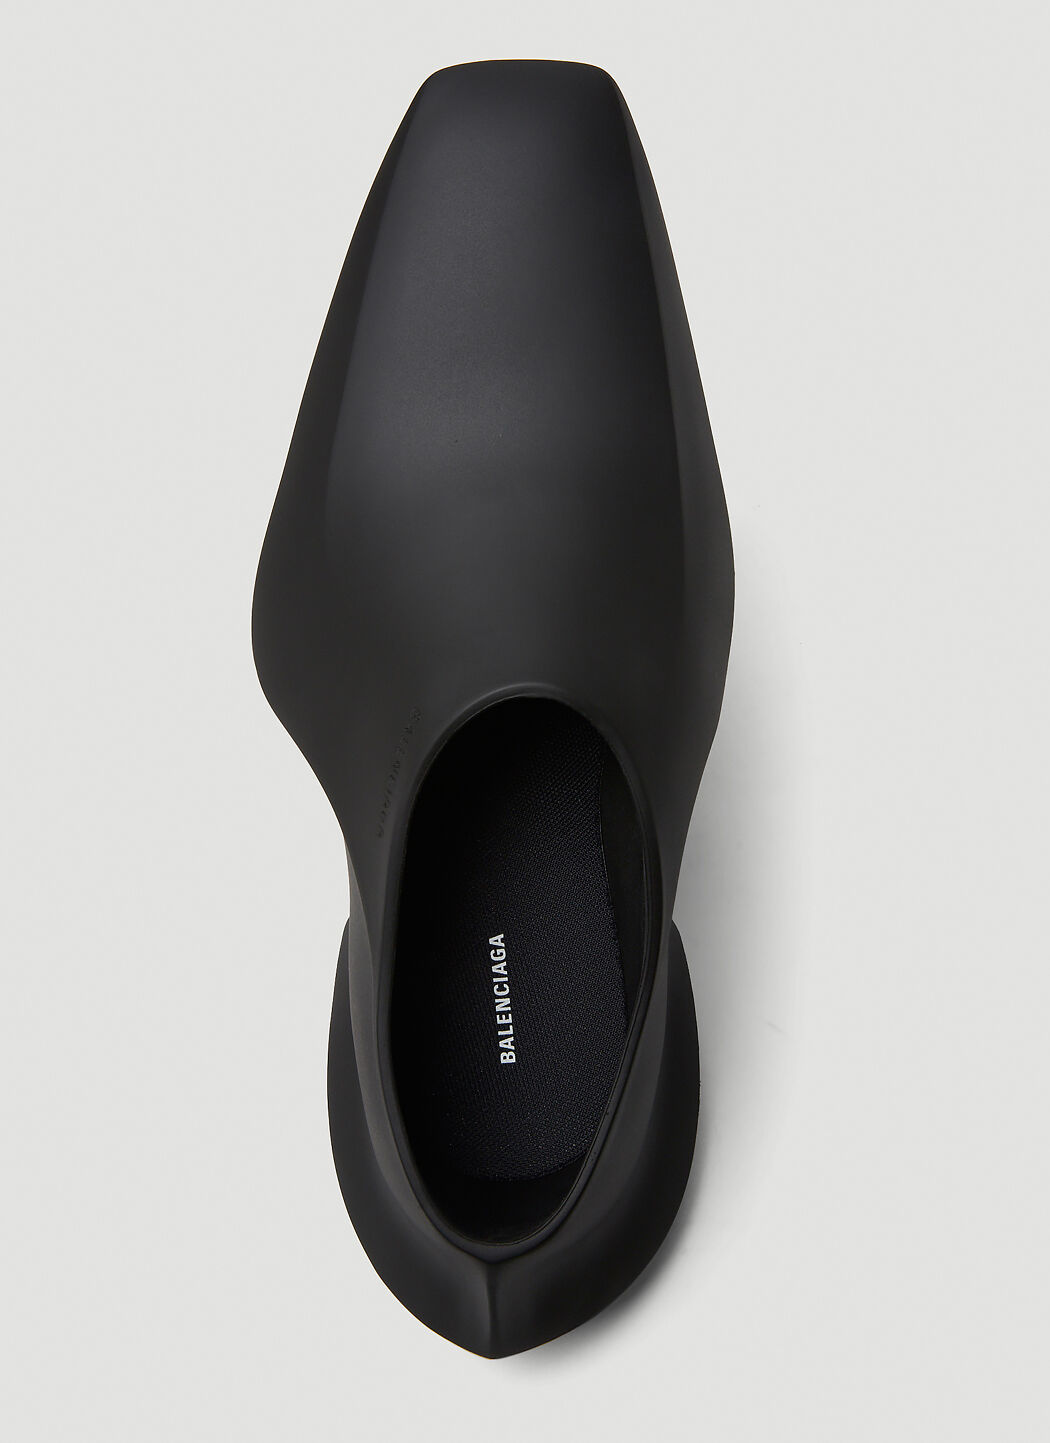 Balenciaga Space Shoes in Black | LN-CC®